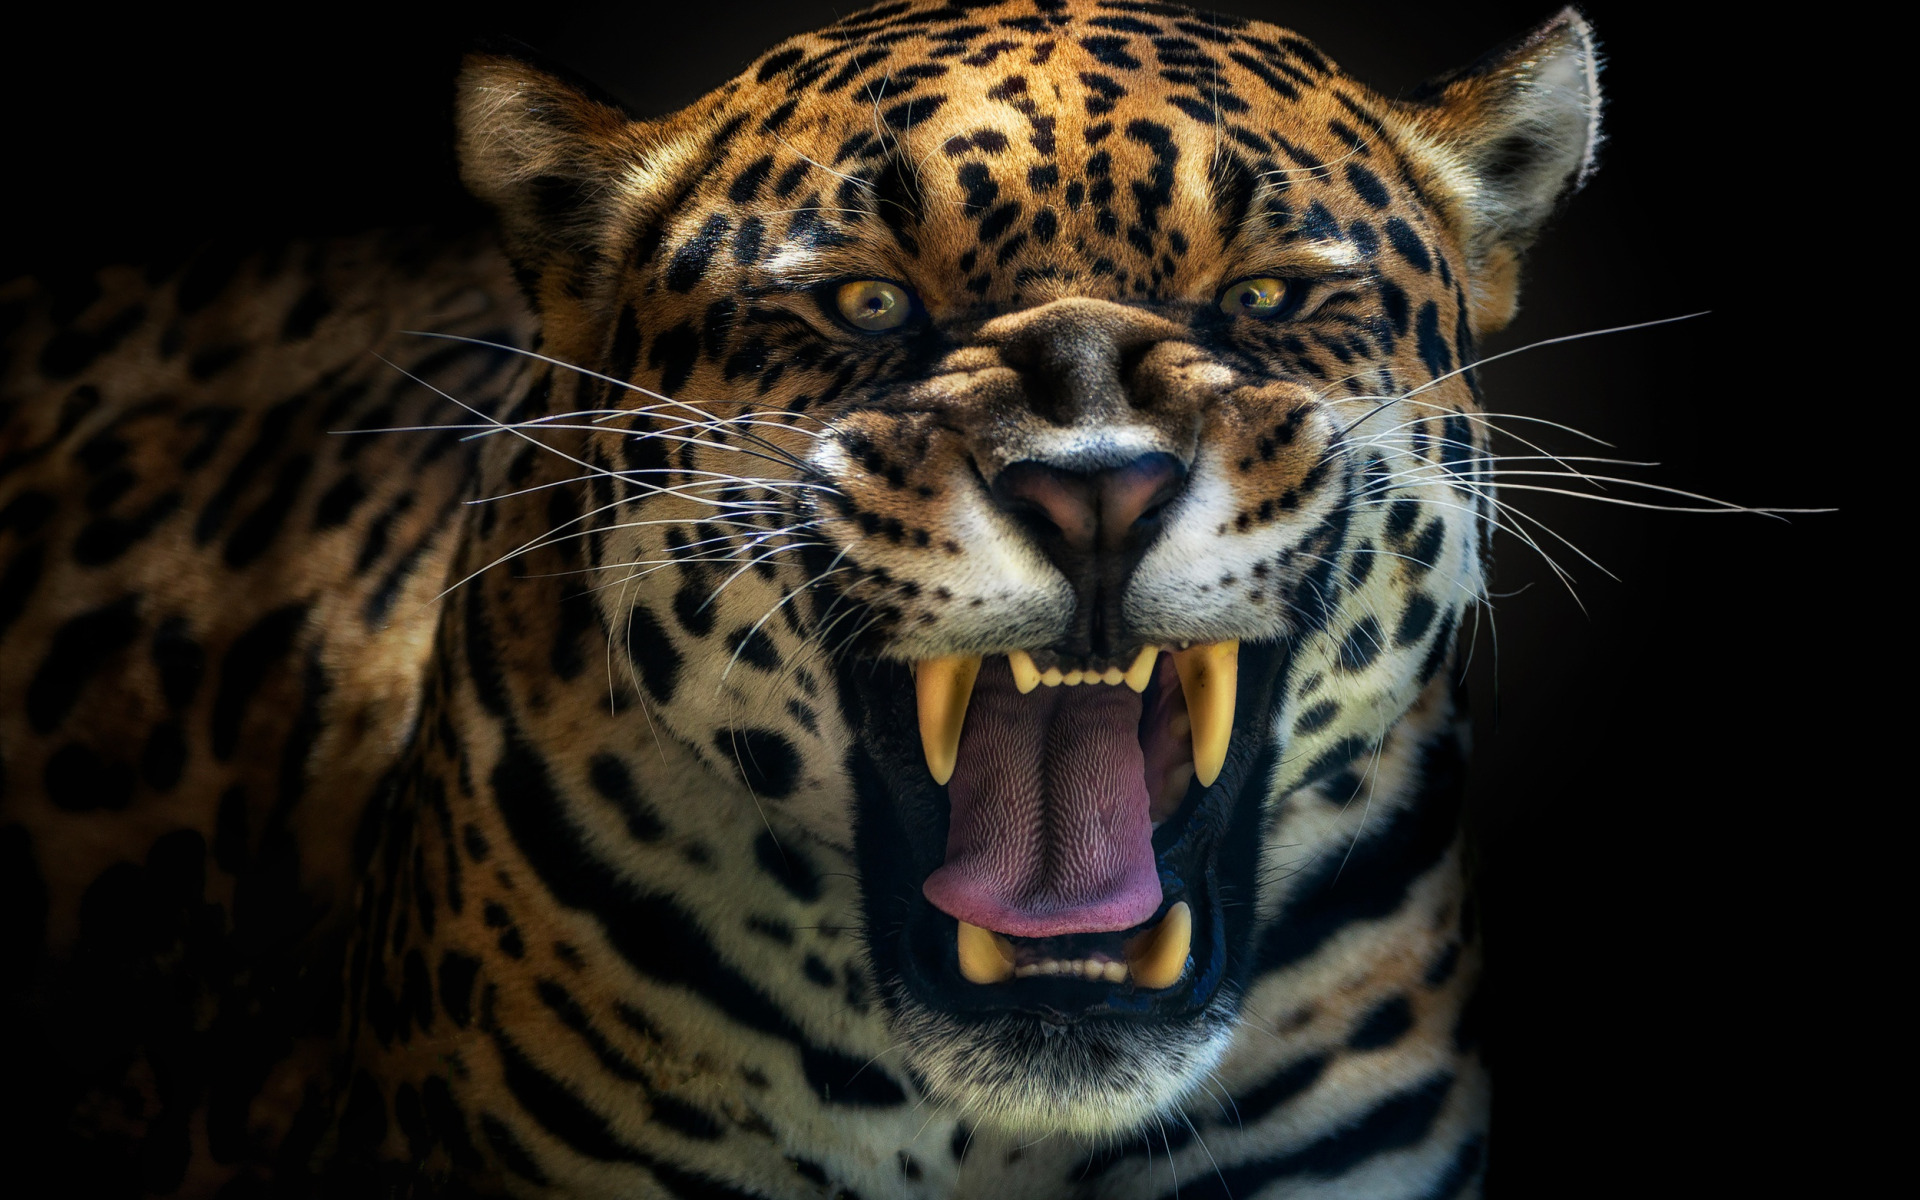 jaguar roar mp3 torrent